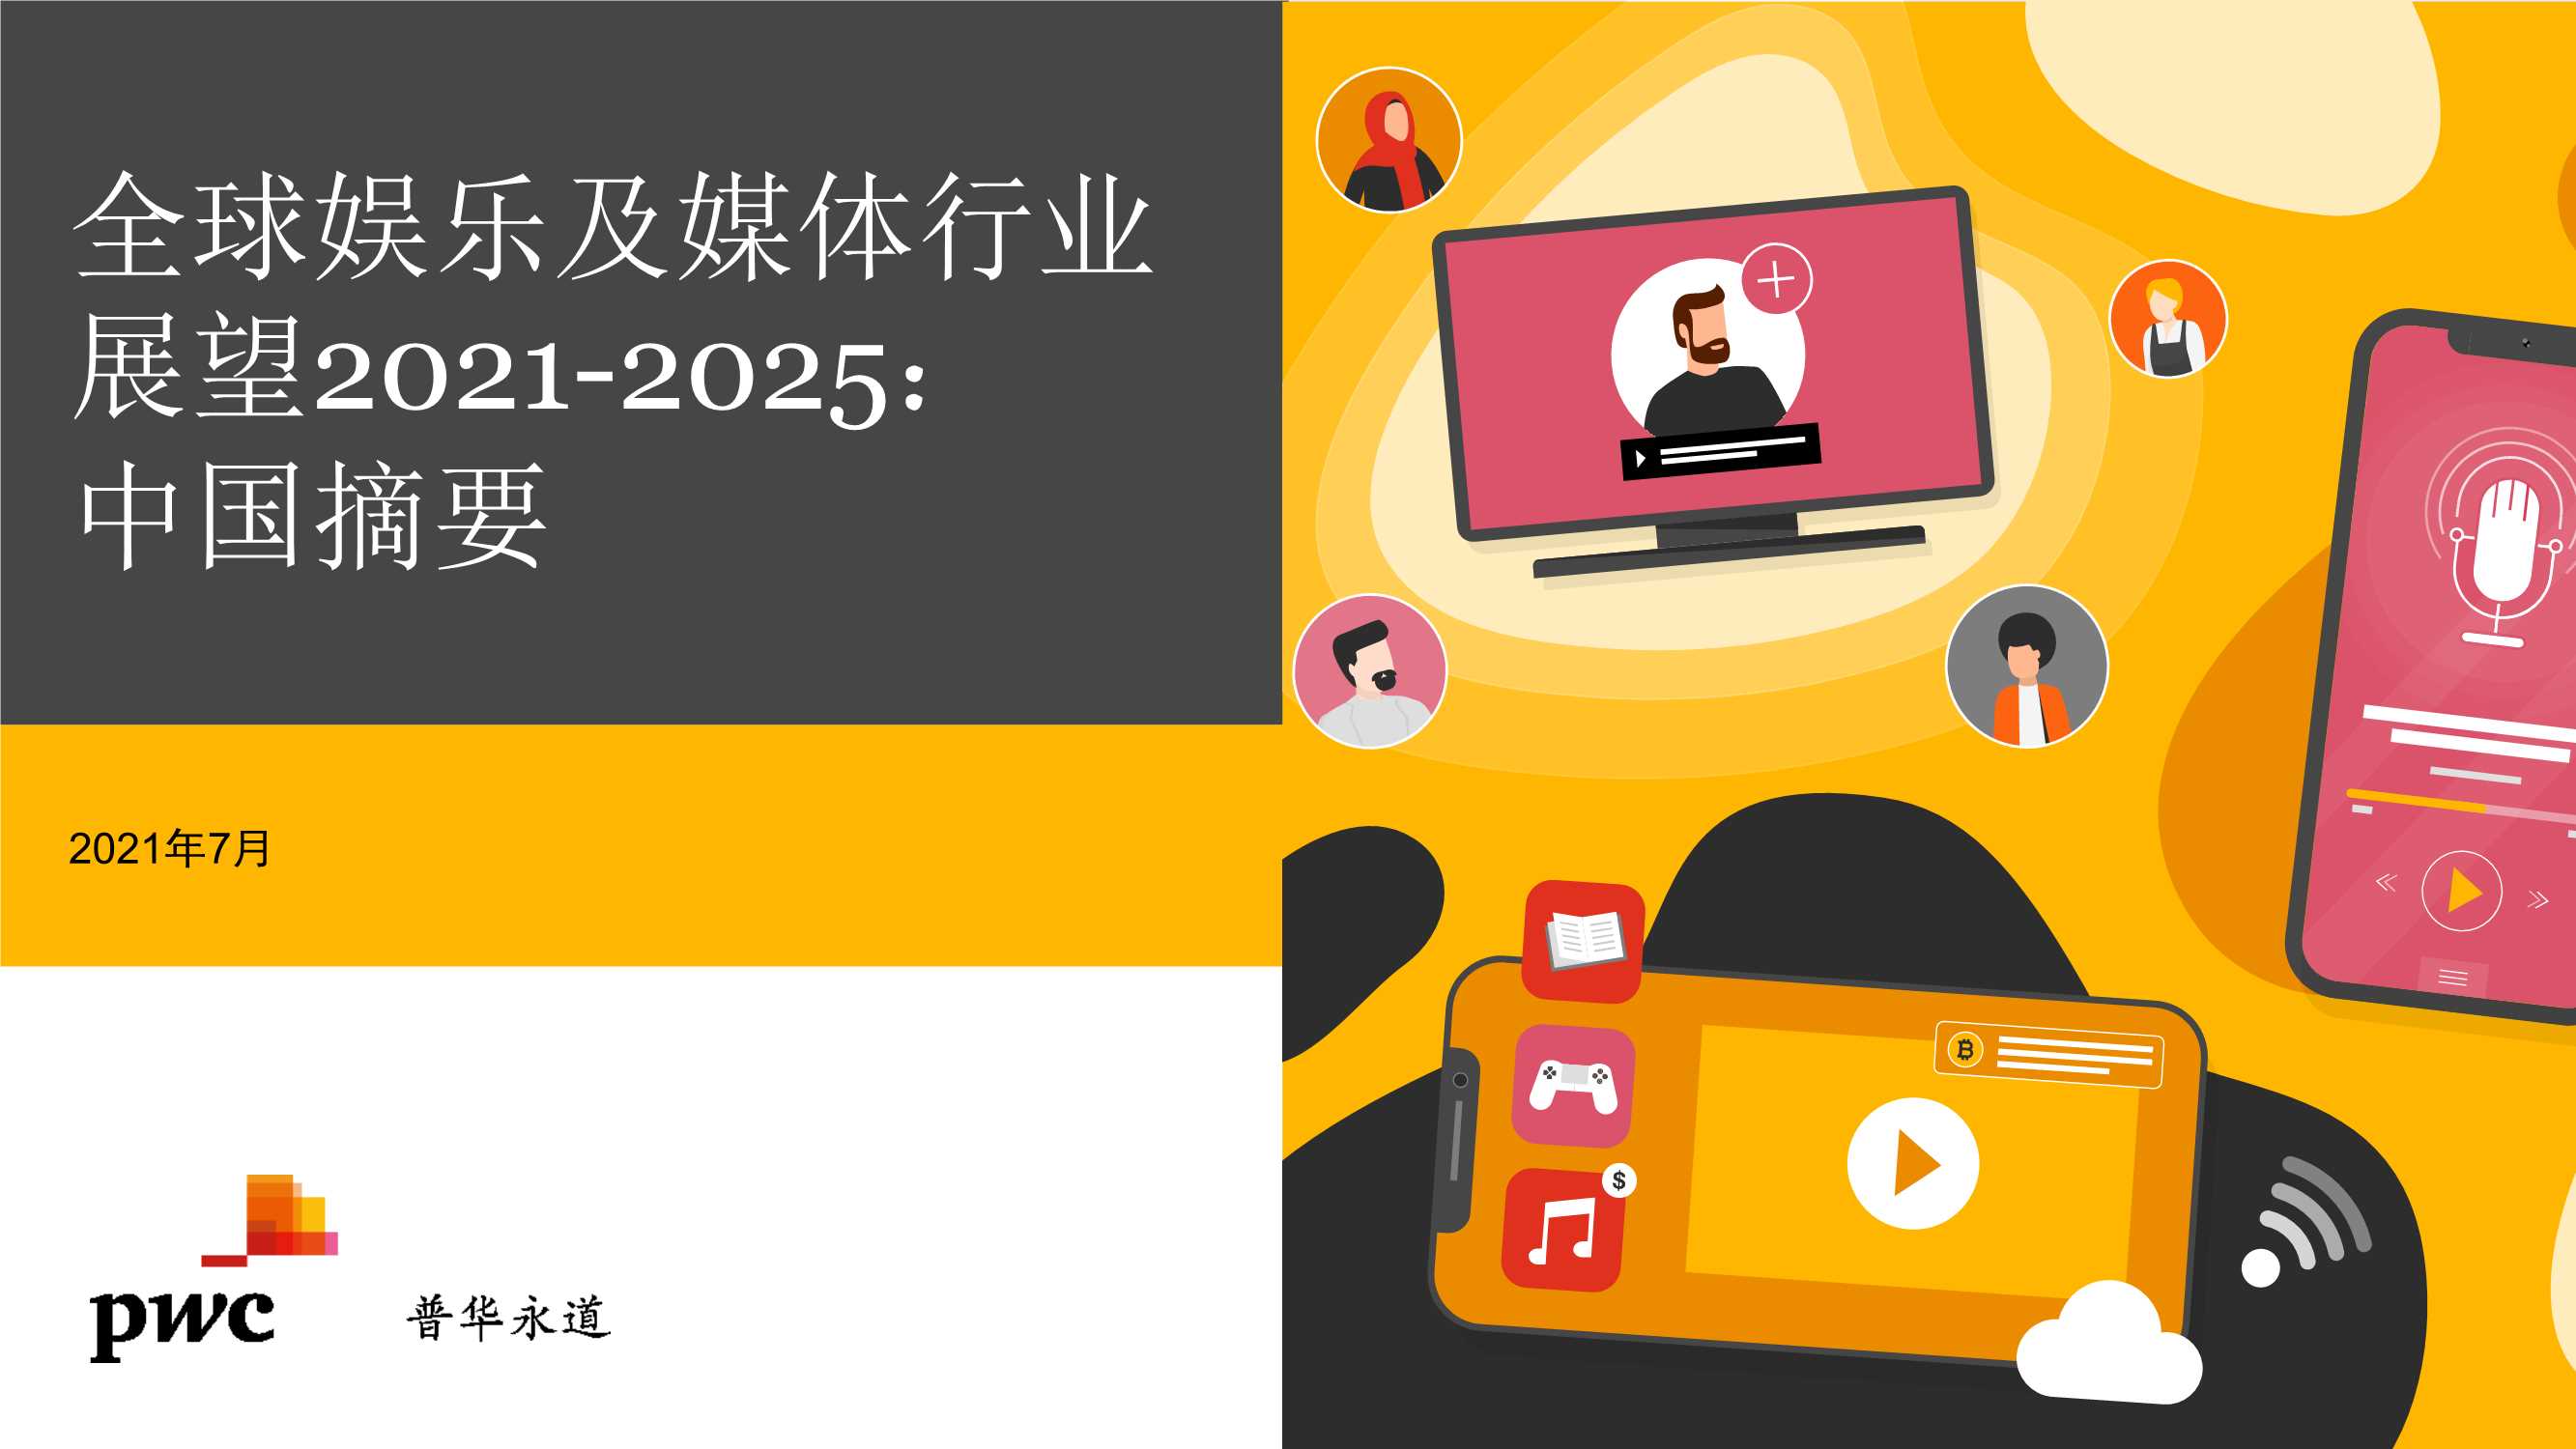 普华永道-2021至2025年全球娱乐及媒体行业展望：中国摘要-2021.09-34页